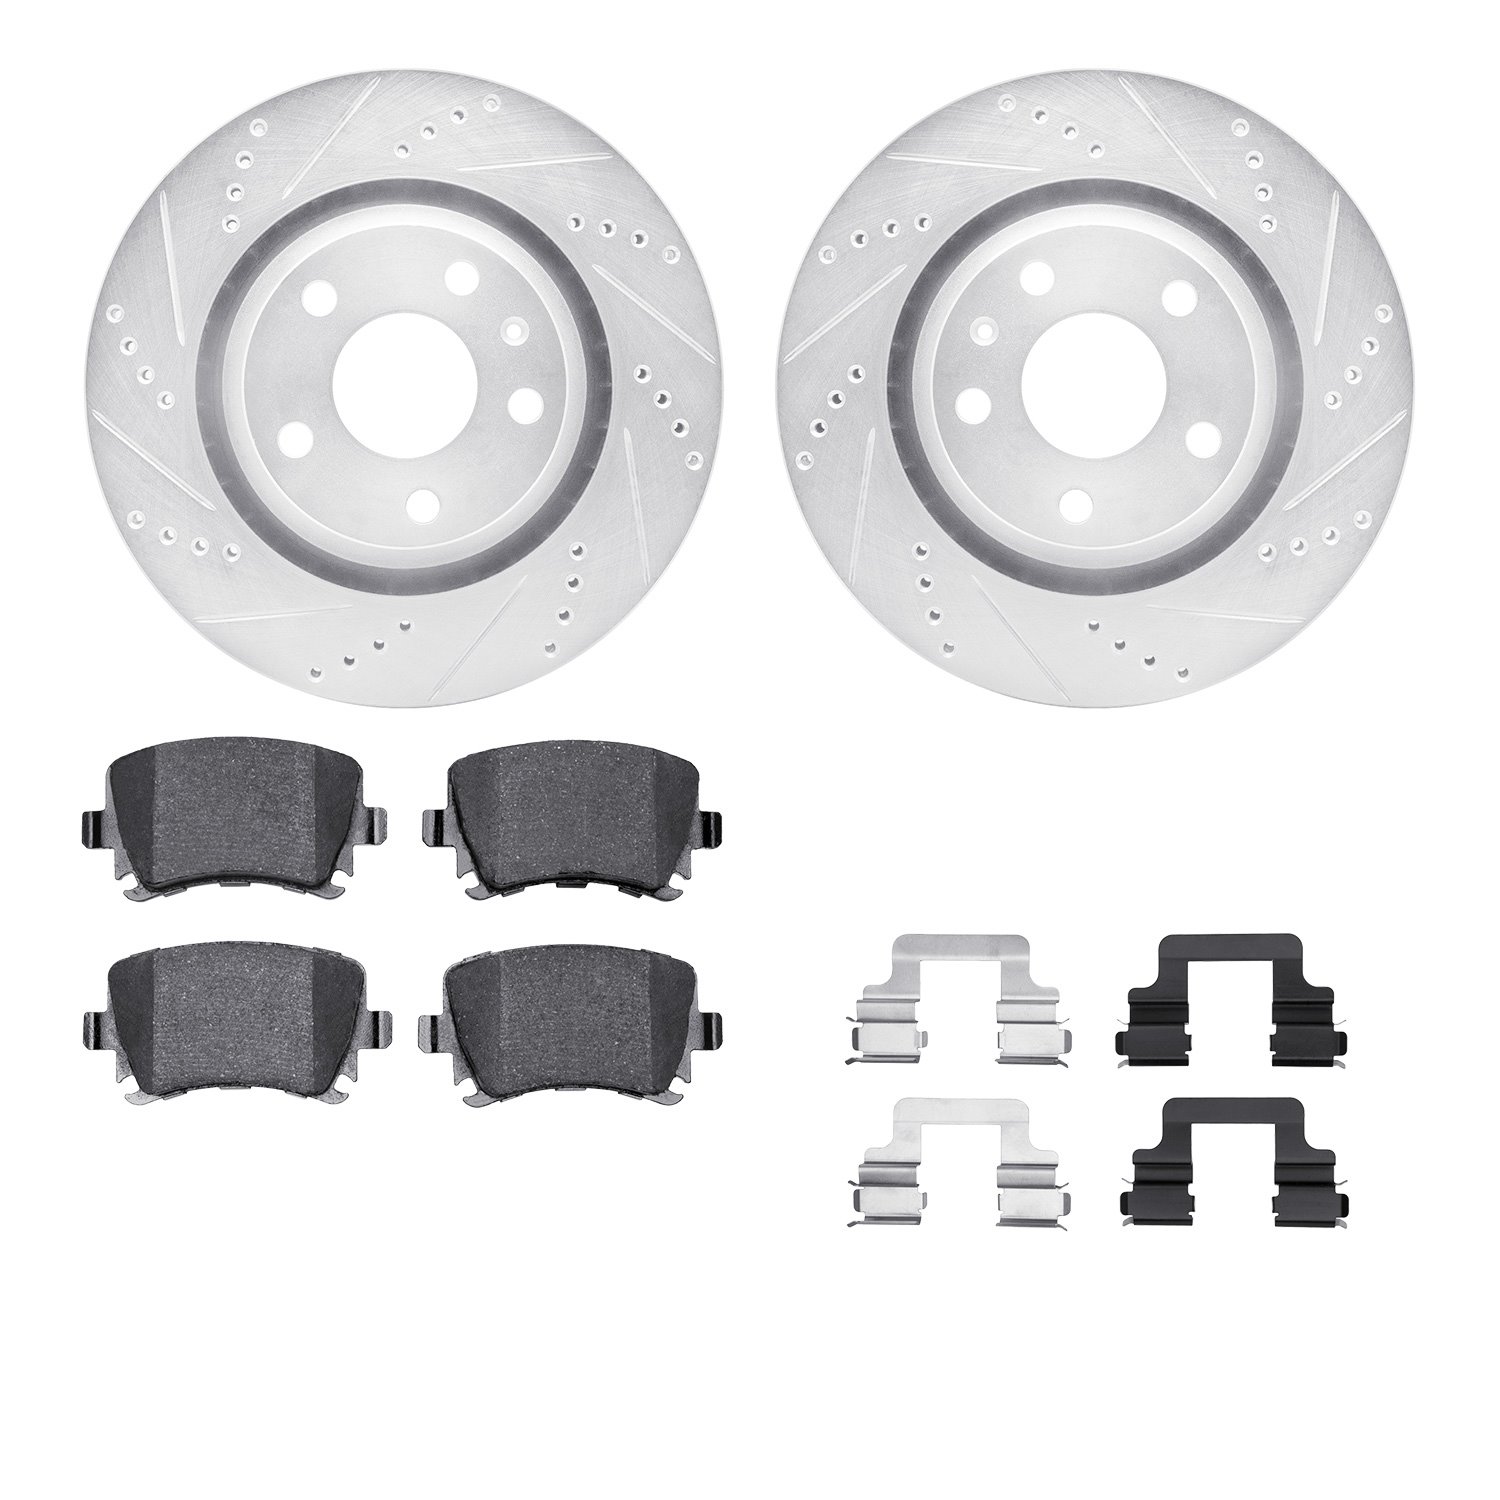 7612-73048 Drilled/Slotted Brake Rotors w/5000 Euro Ceramic Brake Pads Kit & Hardware [Silver], 2008-2015 Audi/Volkswagen, Posit